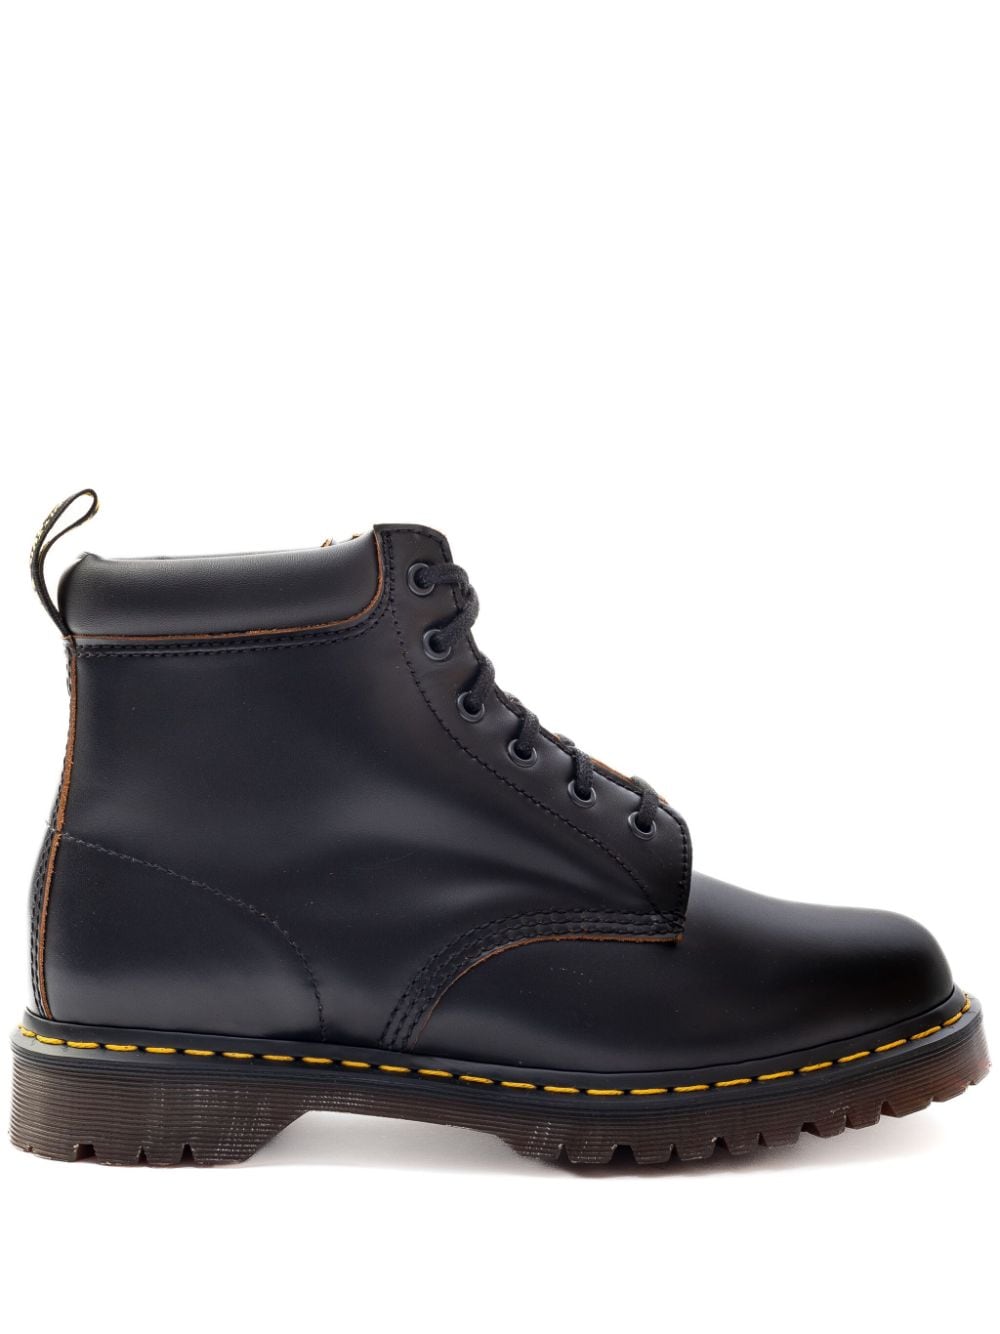 Dr. Martens 939 Vintage ankle boots - Black von Dr. Martens